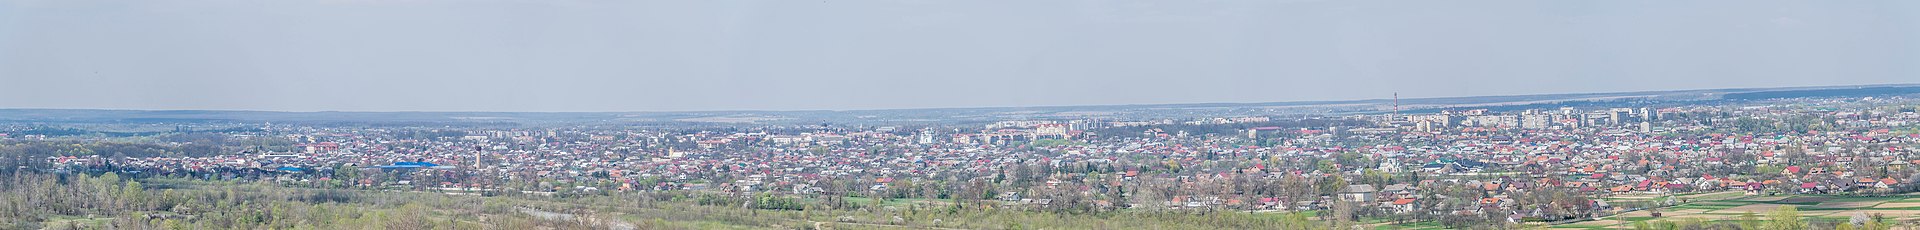 Панорама міста Коломия квітень 2019 року